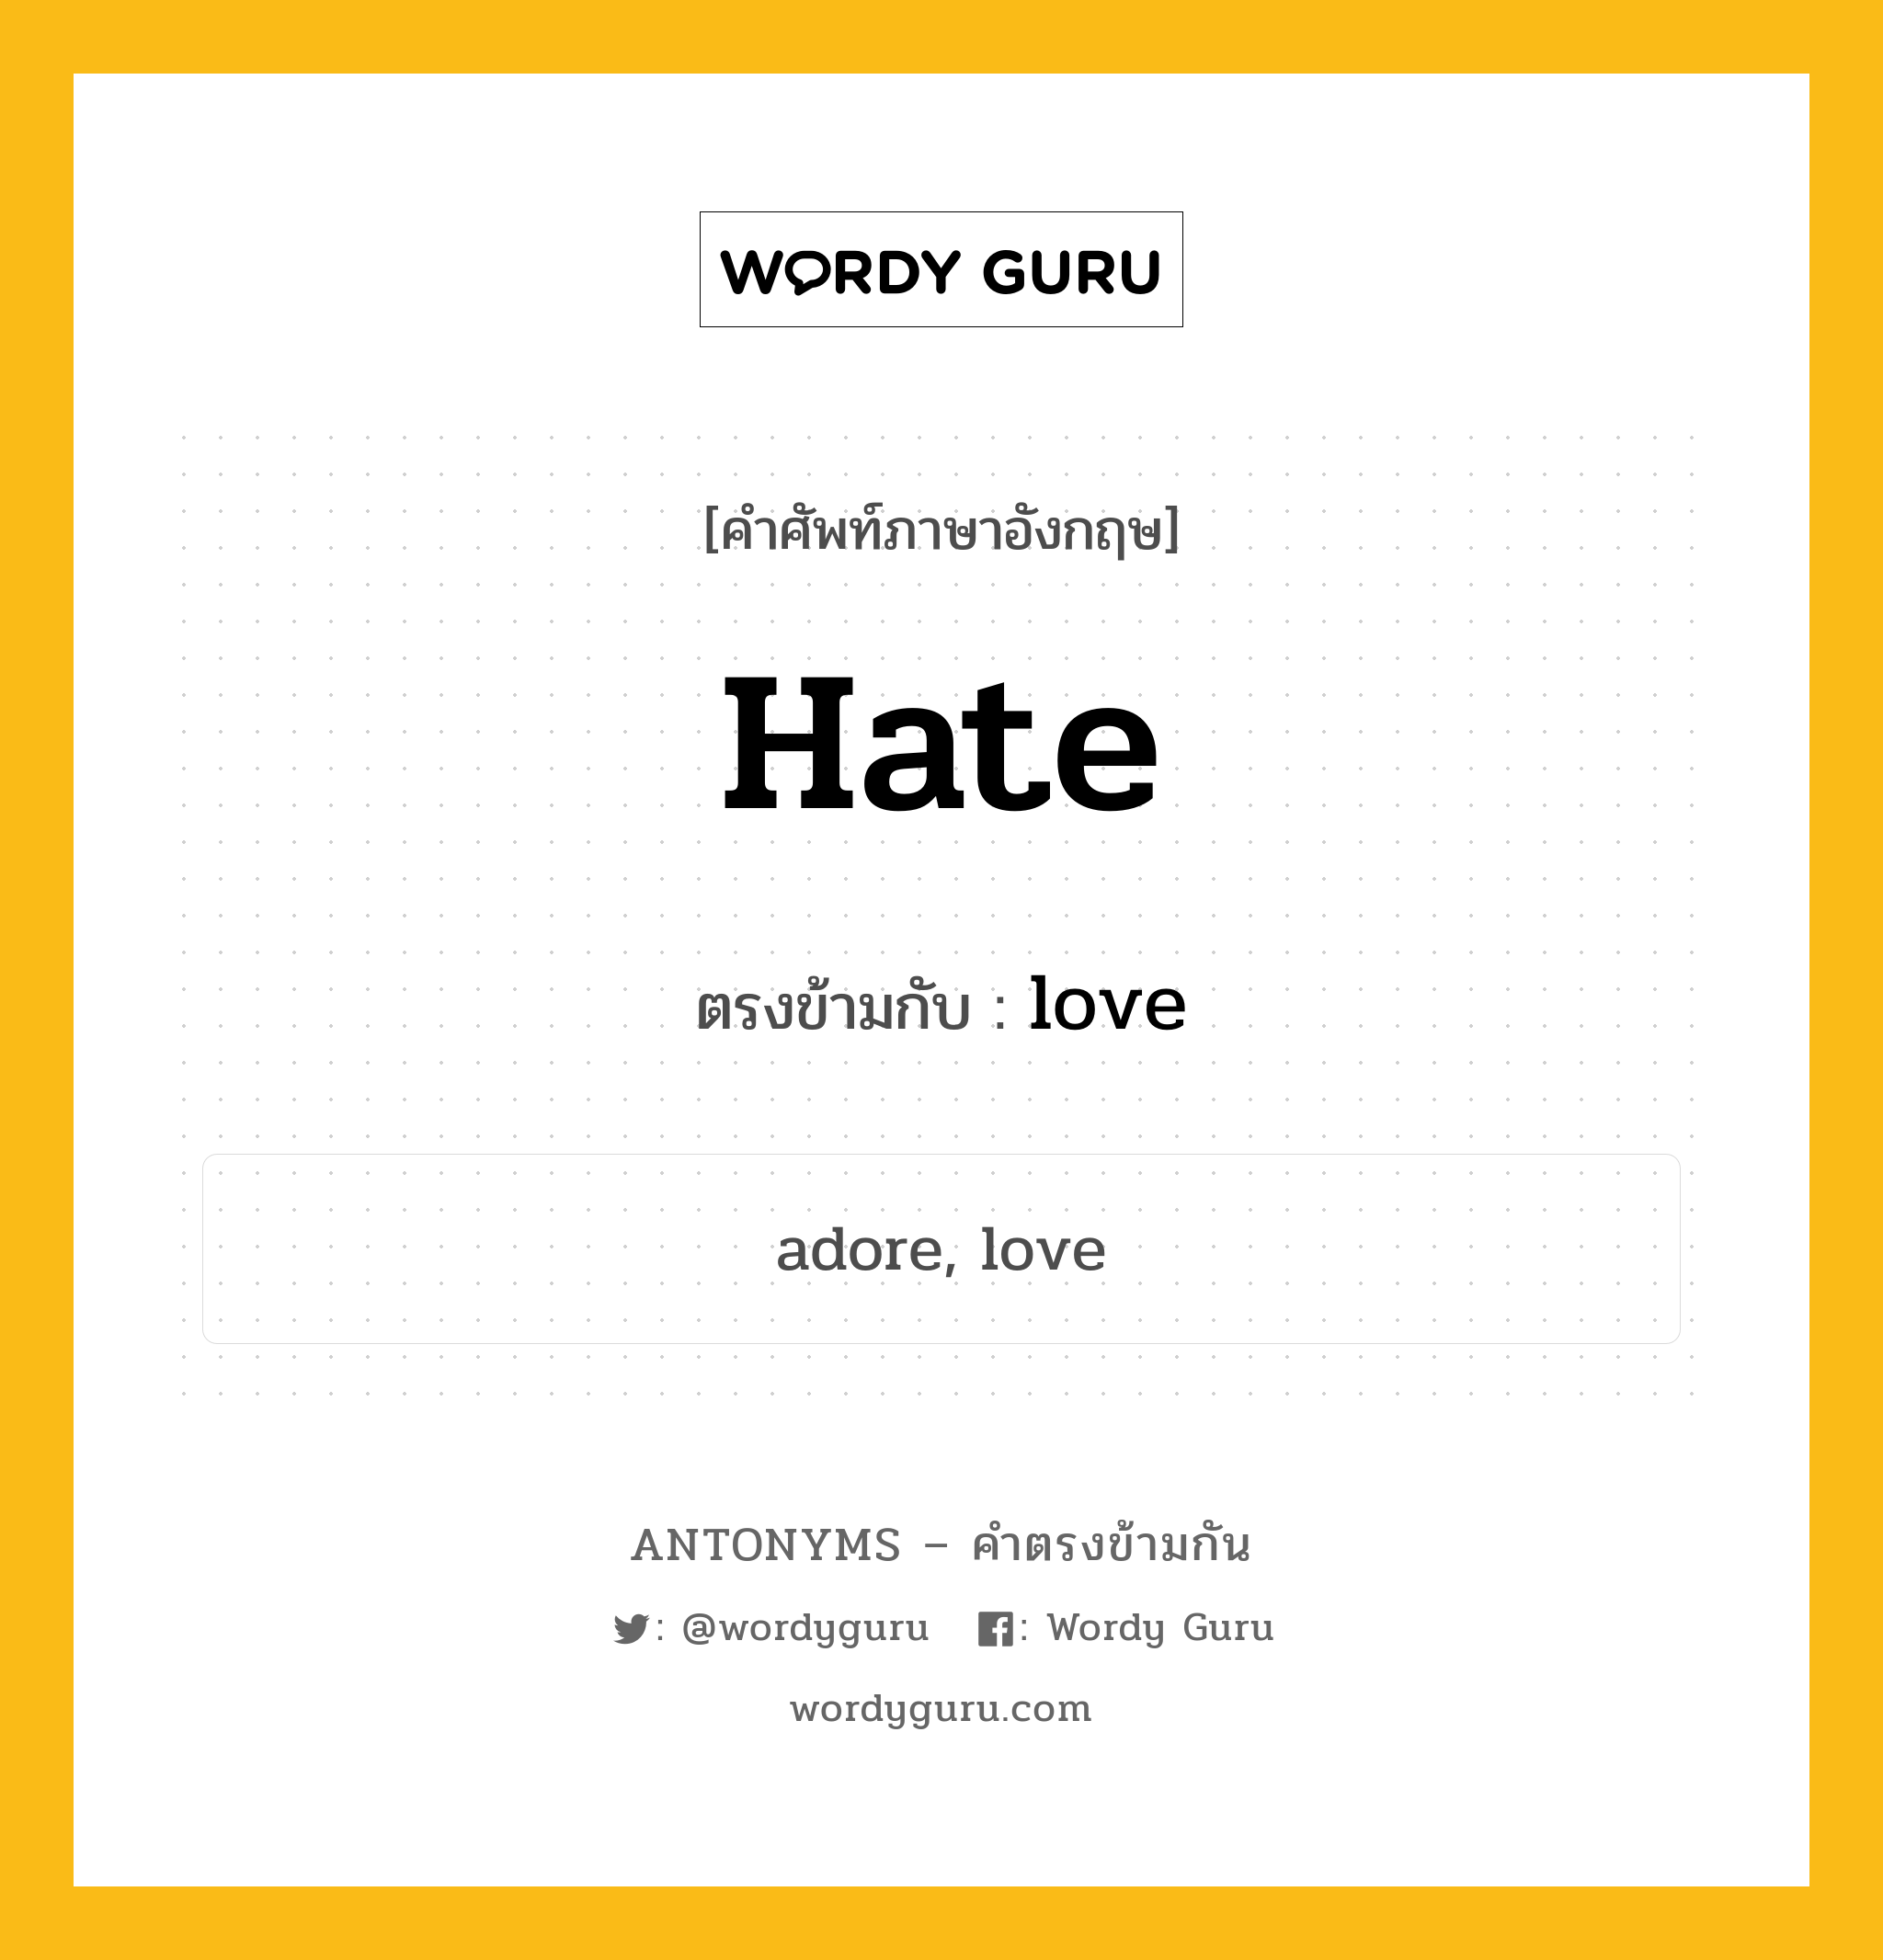 hate เป็นคำตรงข้ามกับคำไหนบ้าง?, คำศัพท์ภาษาอังกฤษ hate ตรงข้ามกับ love หมวด love